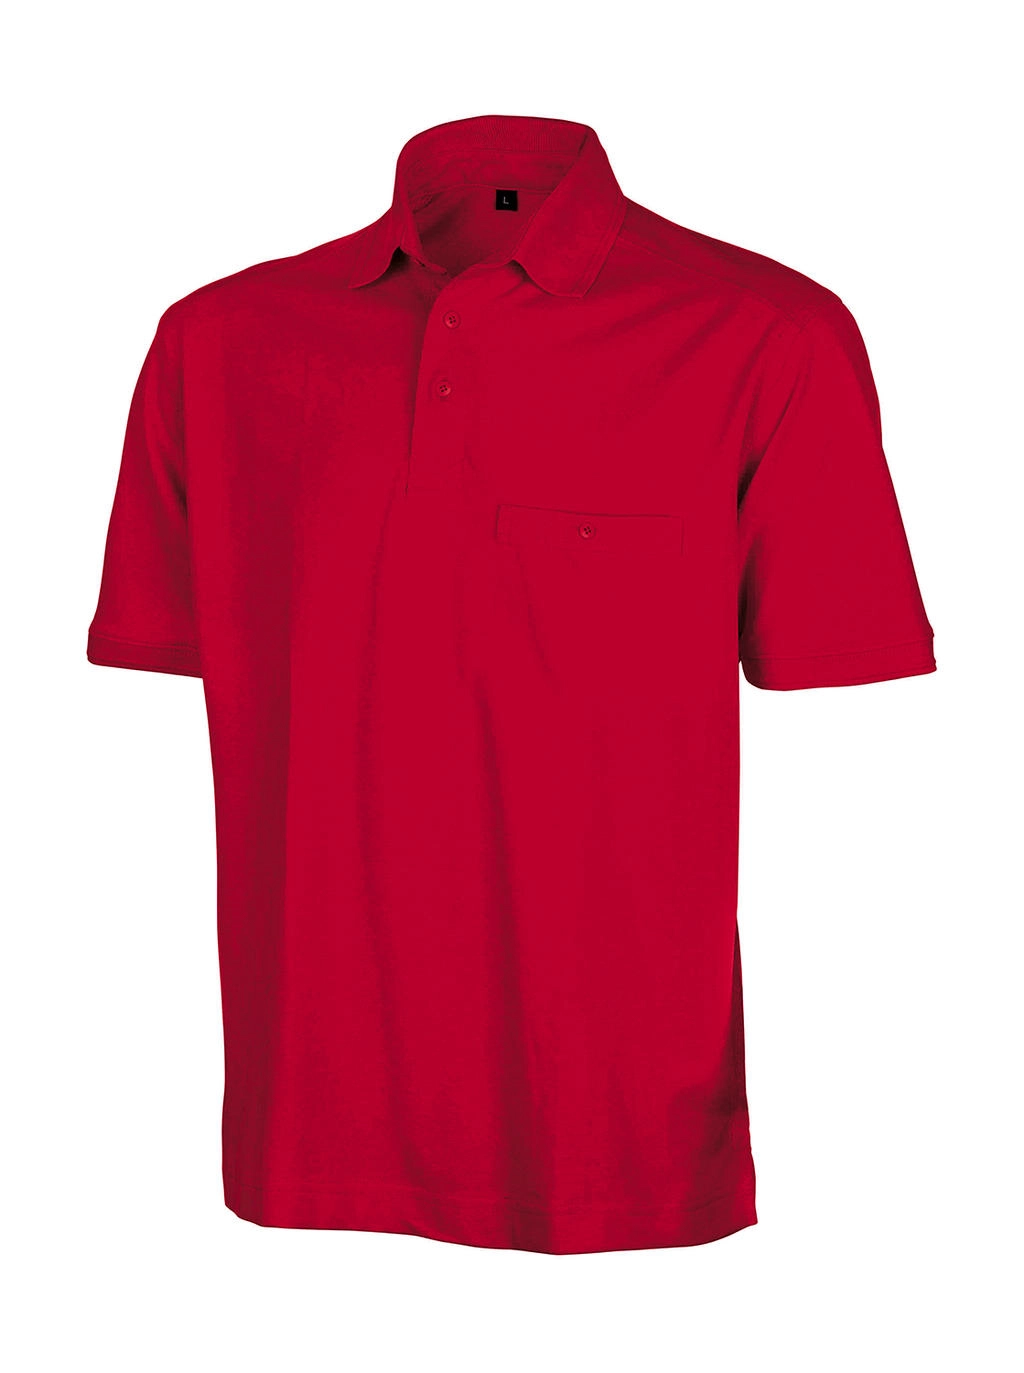 Apex Polo Shirt zum Besticken und Bedrucken in der Farbe Red mit Ihren Logo, Schriftzug oder Motiv.